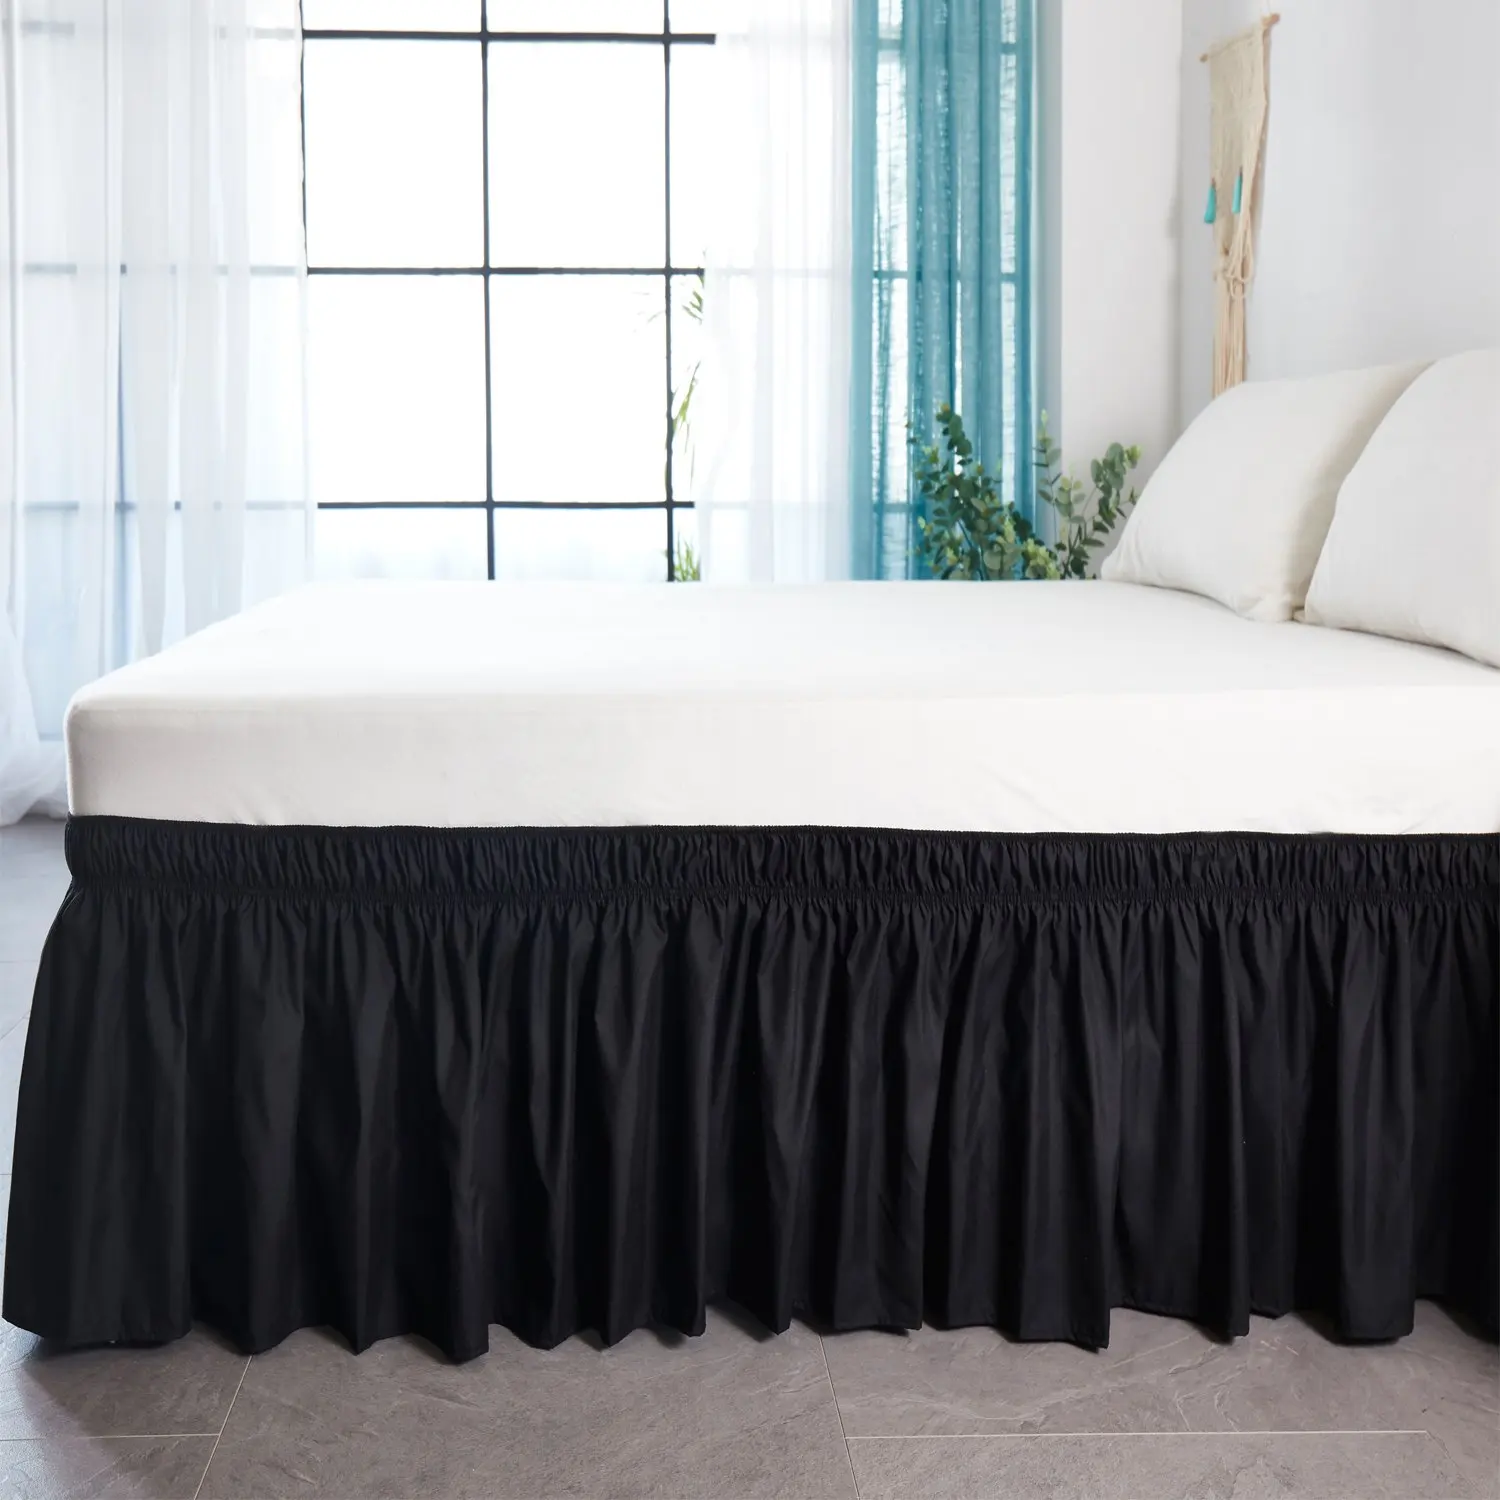 Большой отель кровать юбка обернуть вокруг эластичные кровати Рубашки без поверхности кровати Твин/Полный/королева/король размеры 38 см Высота домашний декор